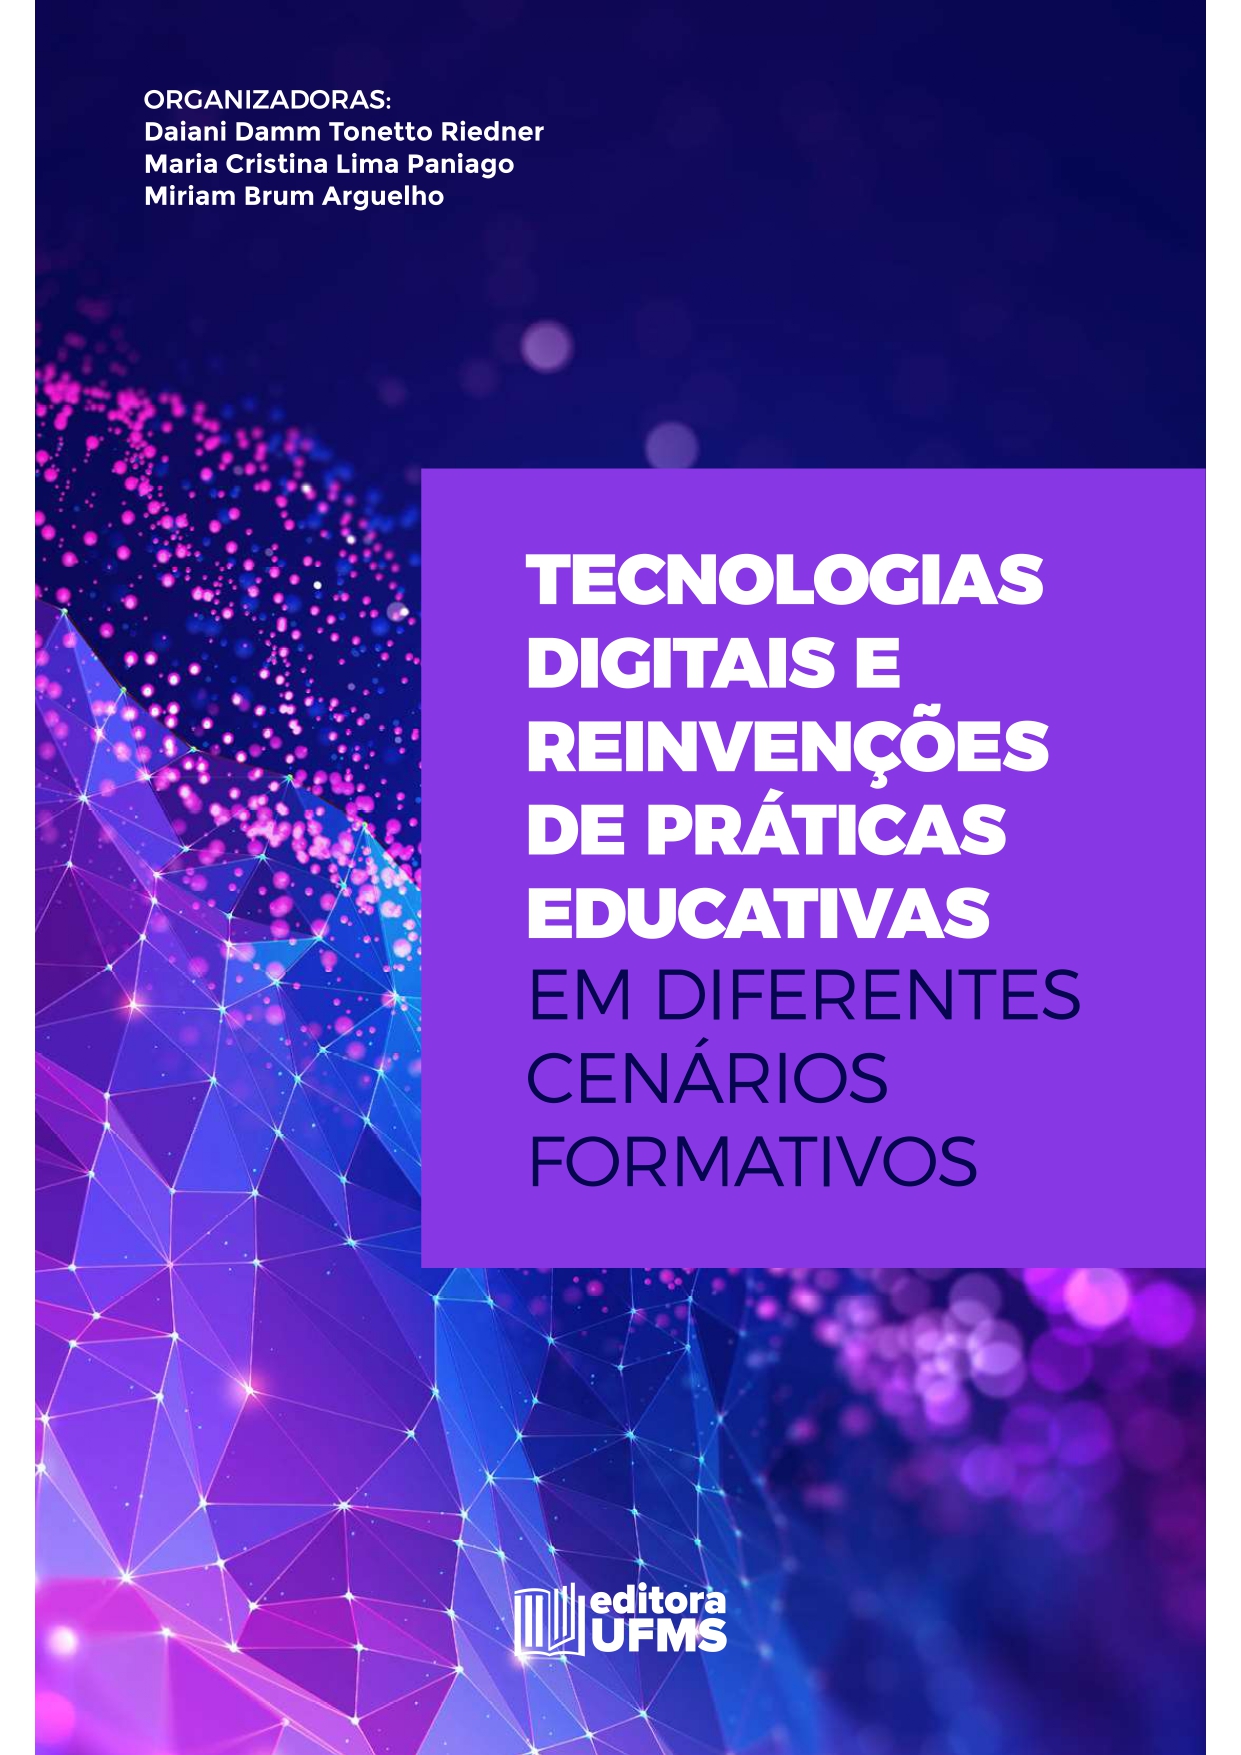 Tecnologias Digitais E Reinvenções De Práticas Educativas Em Diferentes Cenários Formativos 4608